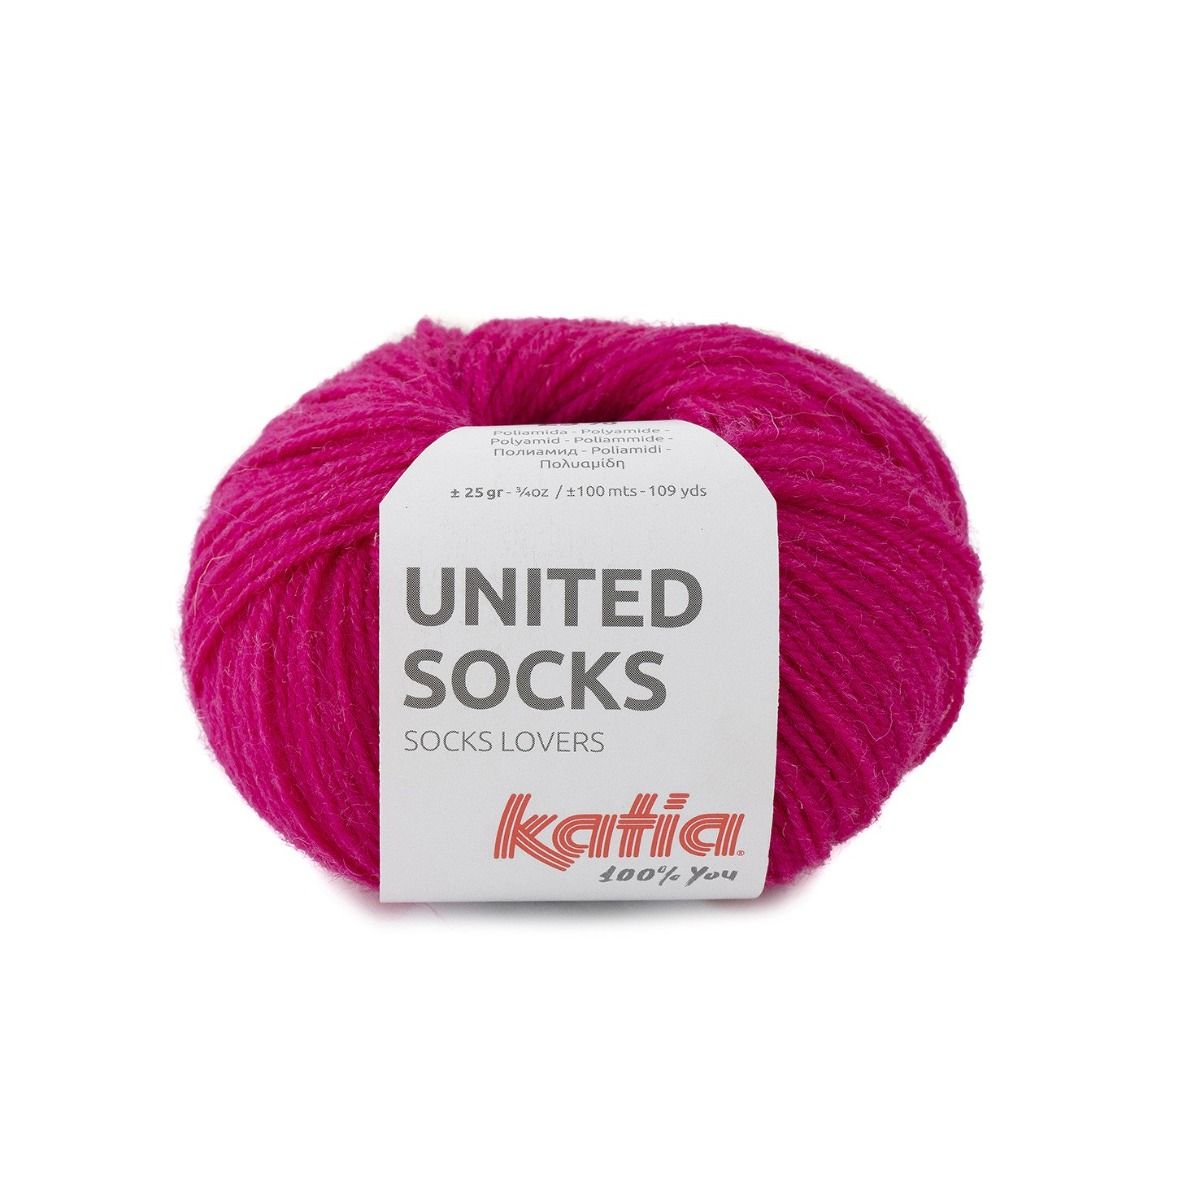 United Socks: Superwash Wool